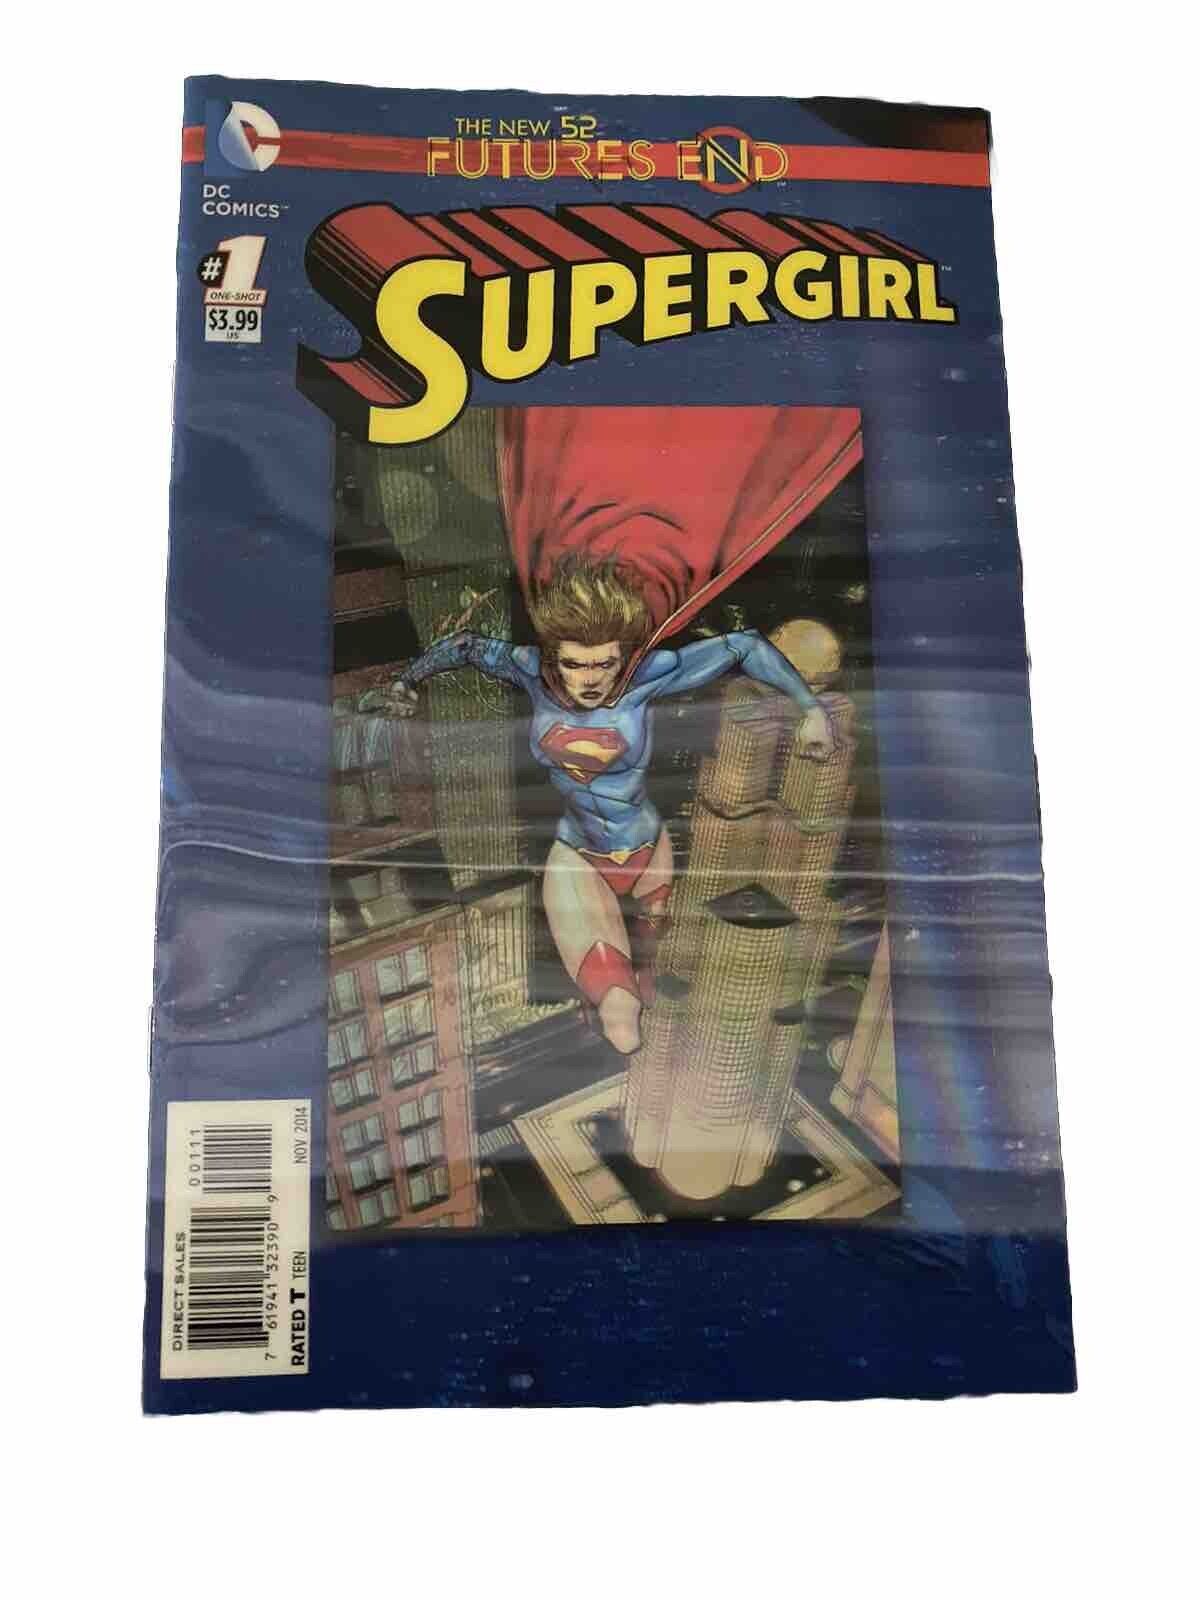 Supergirl: Futures End #1 (DC Comics November 2014)